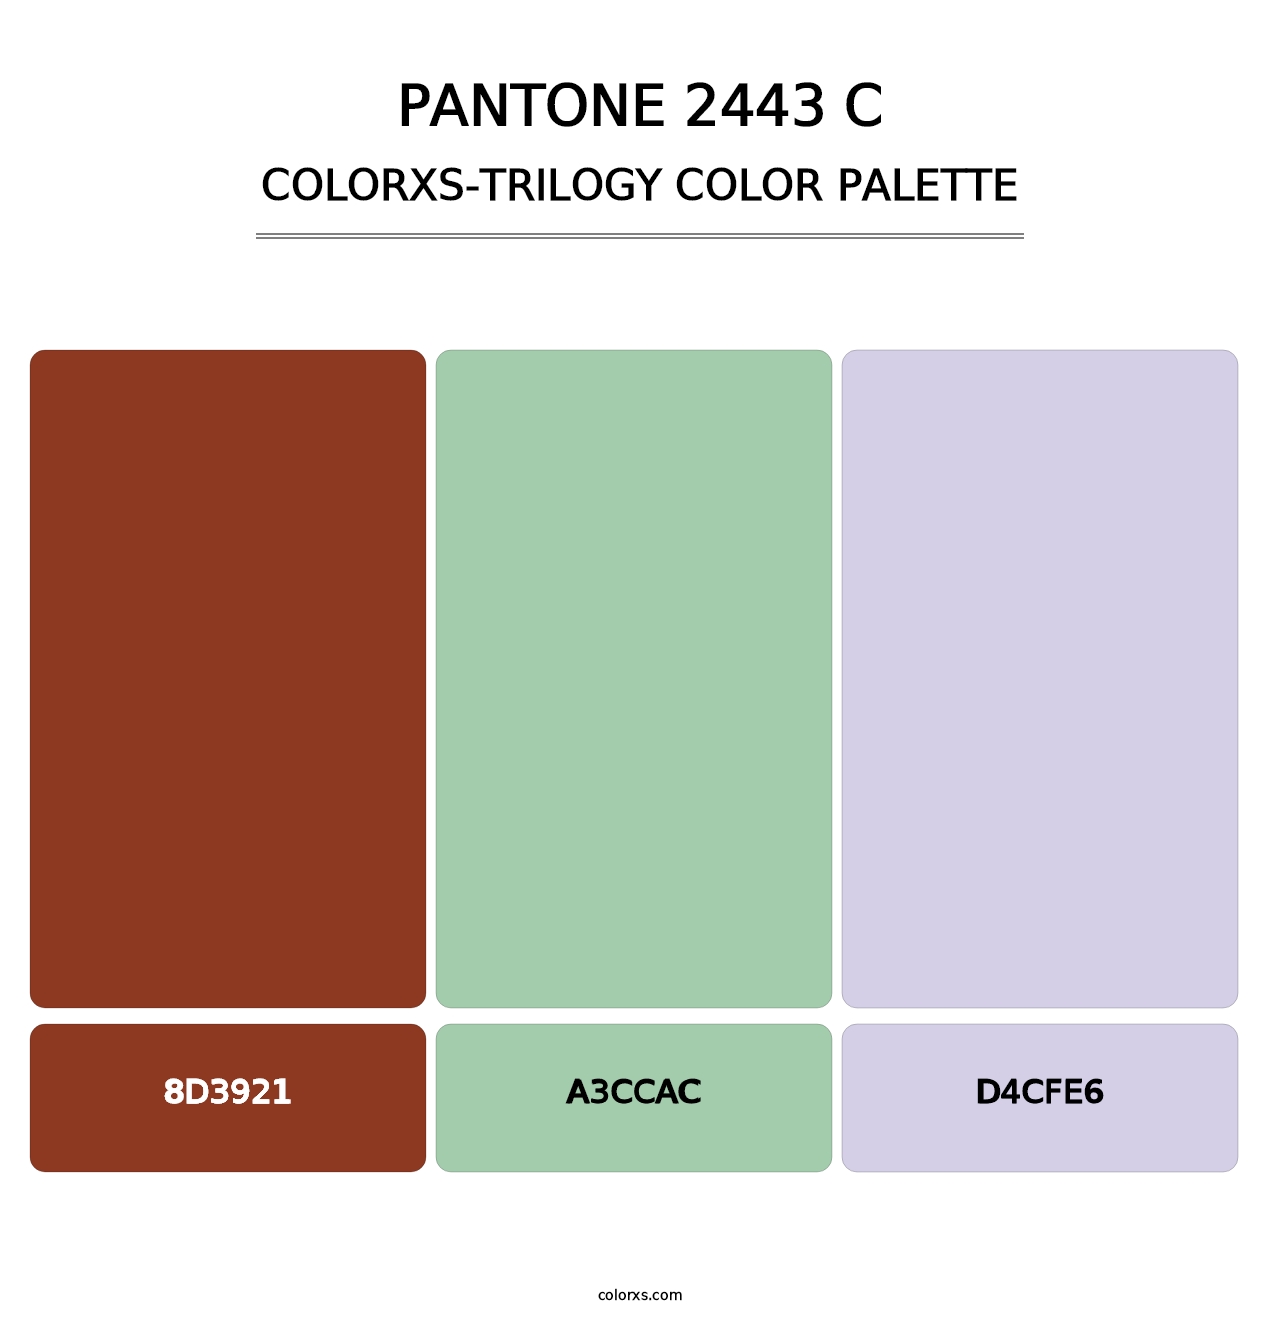 PANTONE 2443 C - Colorxs Trilogy Palette